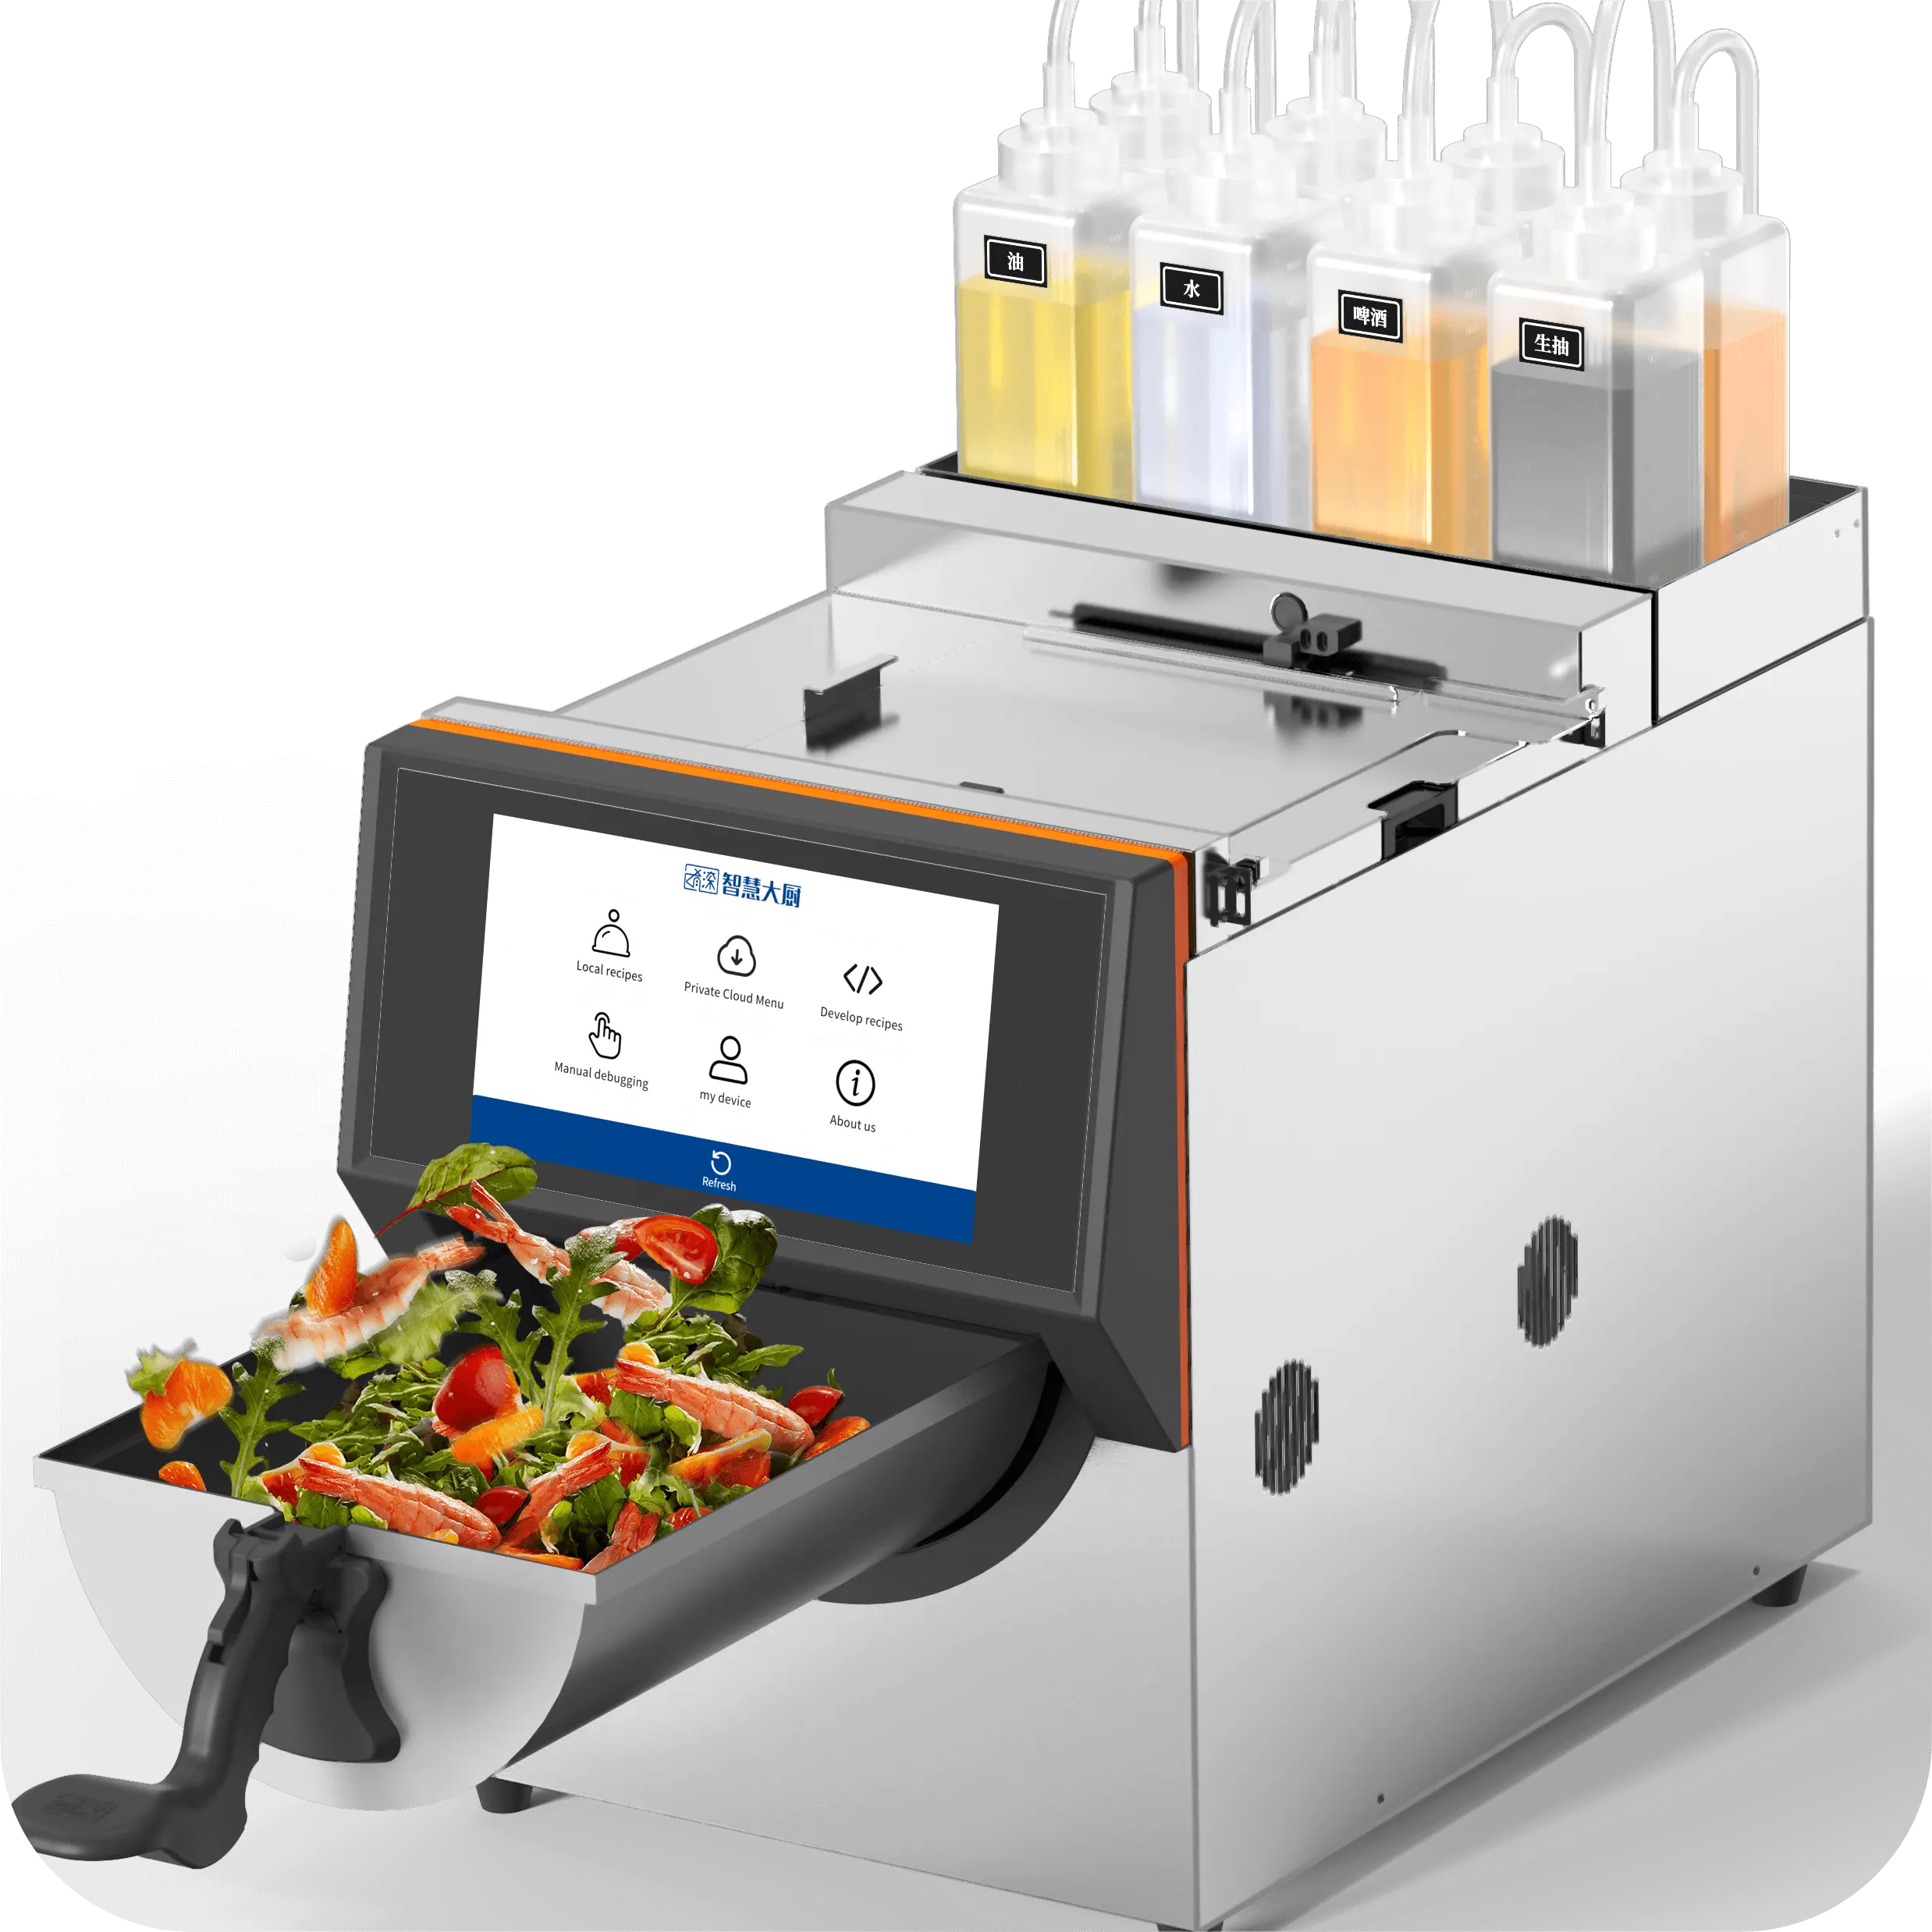 Elektro mixer für Restaurant geräte Küchen küche Roboter 4500W Lebensmittel mischer Smart Robot Kocher Selbst koch maschine